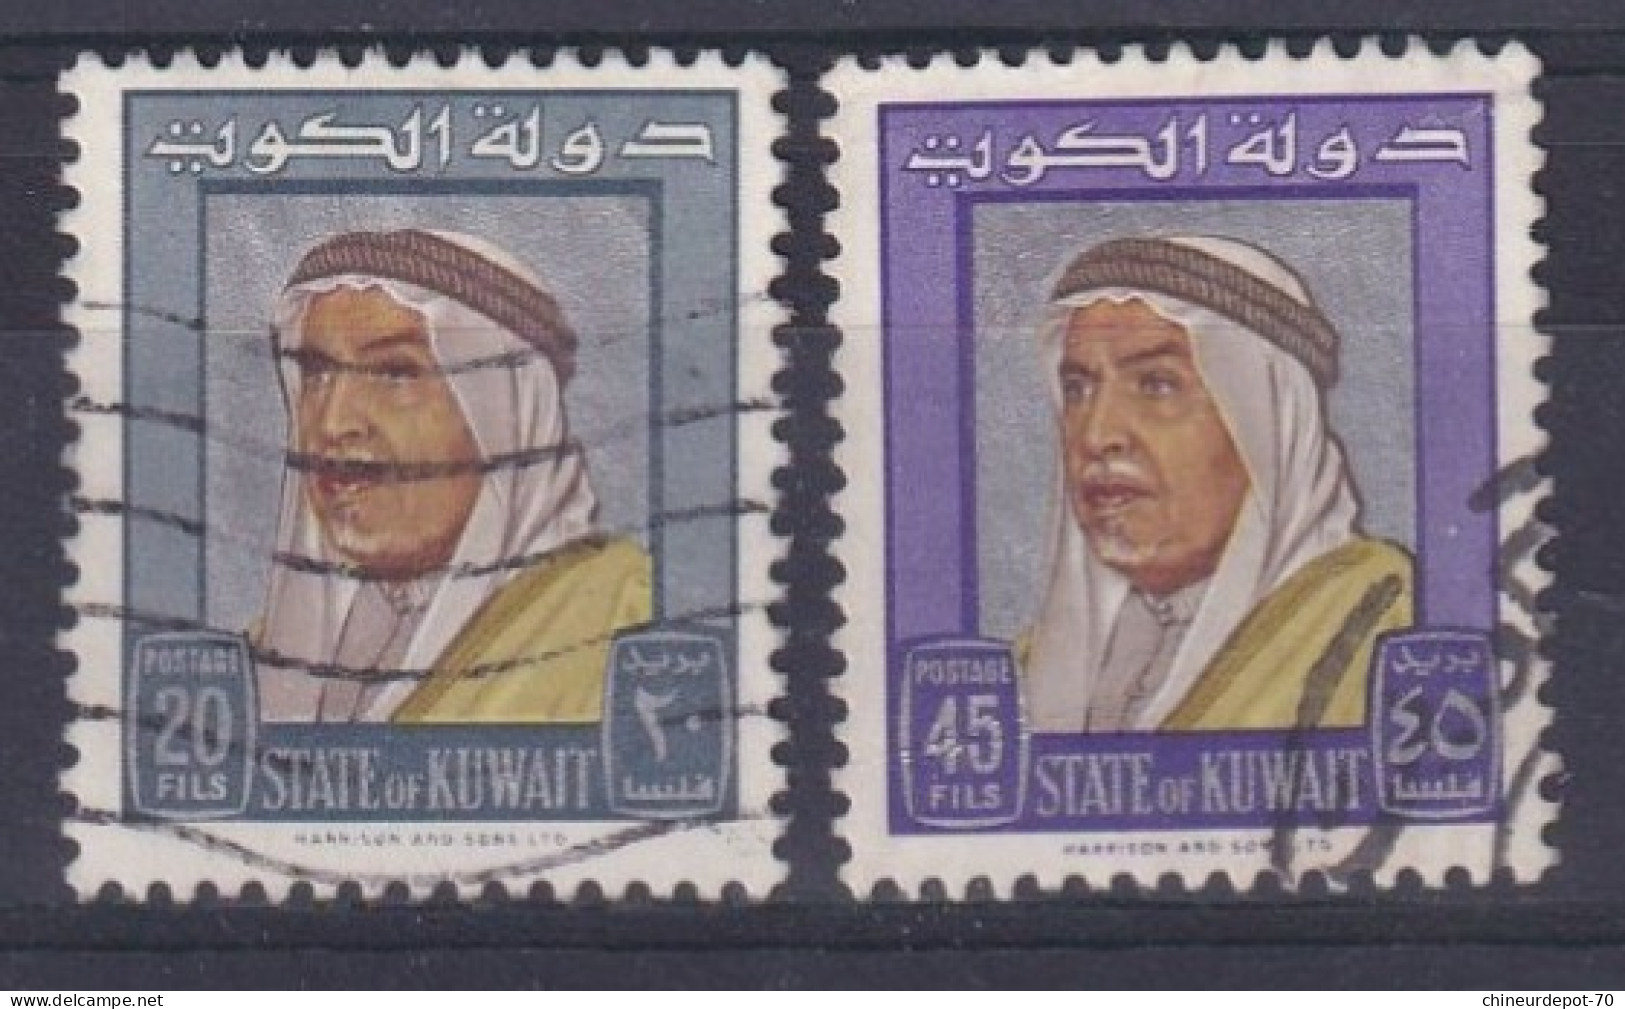 Kuwait Koweït - Kuwait